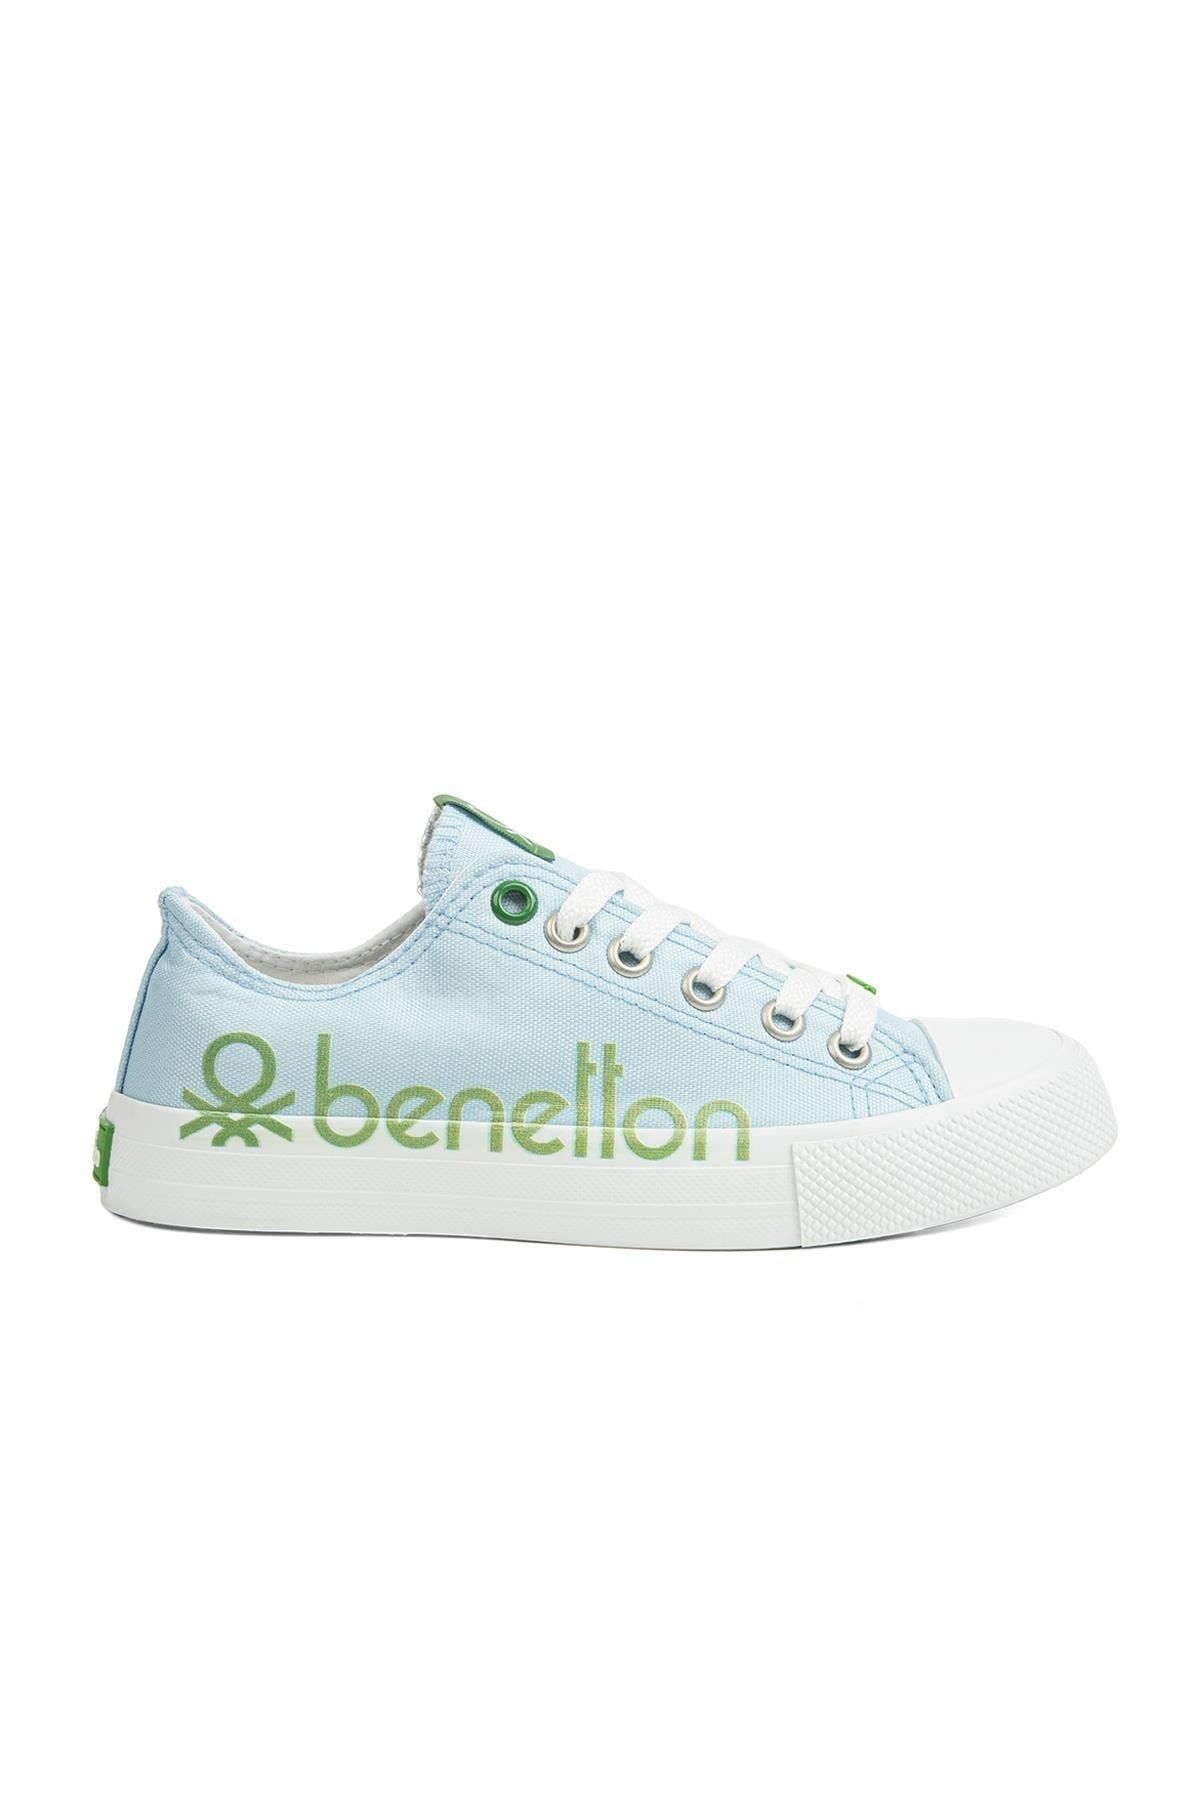 Benetton ® | Bn-30566 - 3374 Mavi - Kadın Spor Ayakkabı